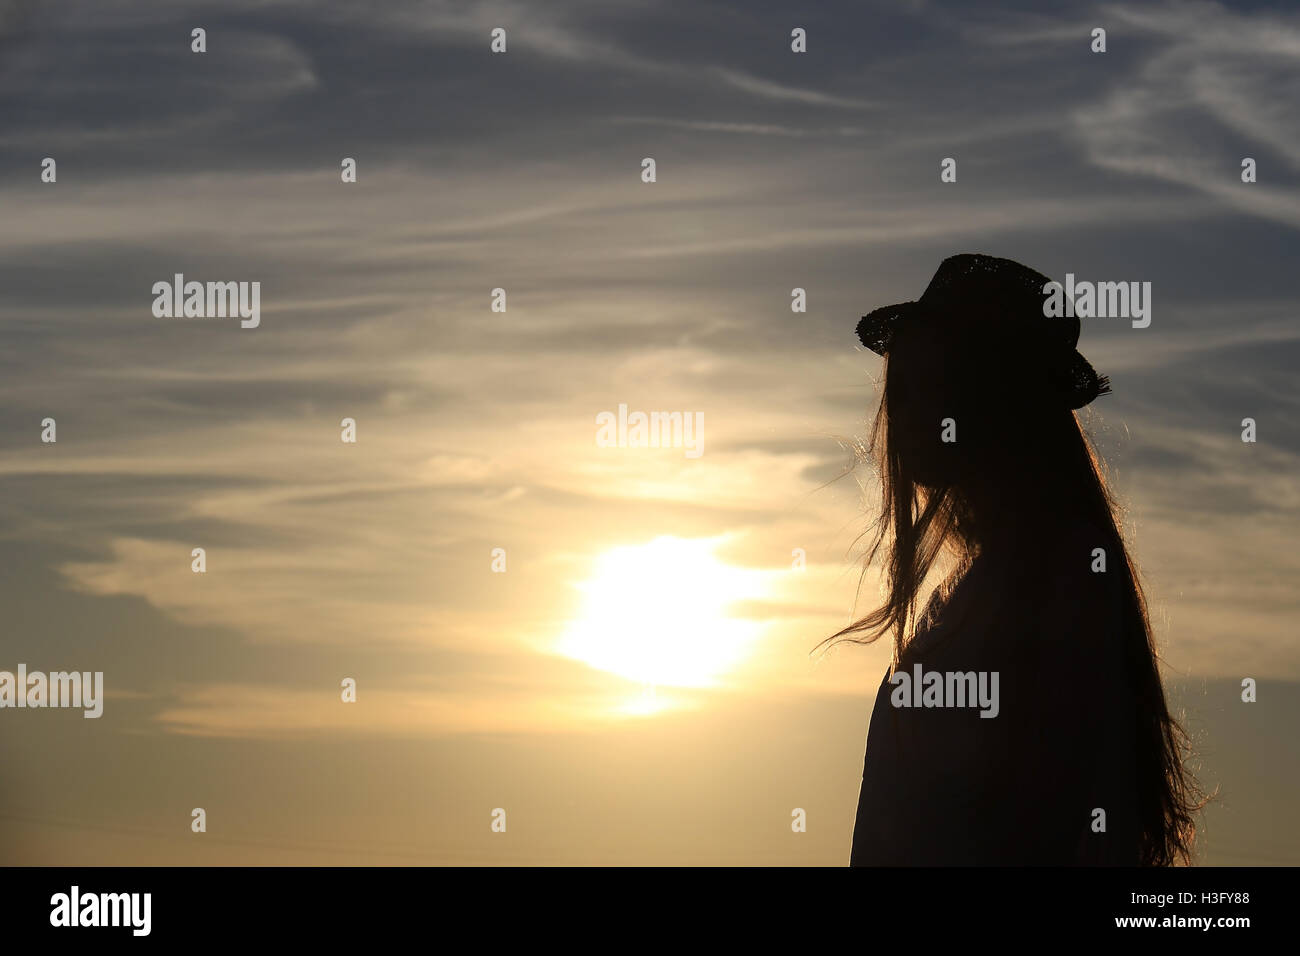 Una ragazza in silhouette contro il sole con battenti capelli dorati, sta indossando un cappello. Foto Stock